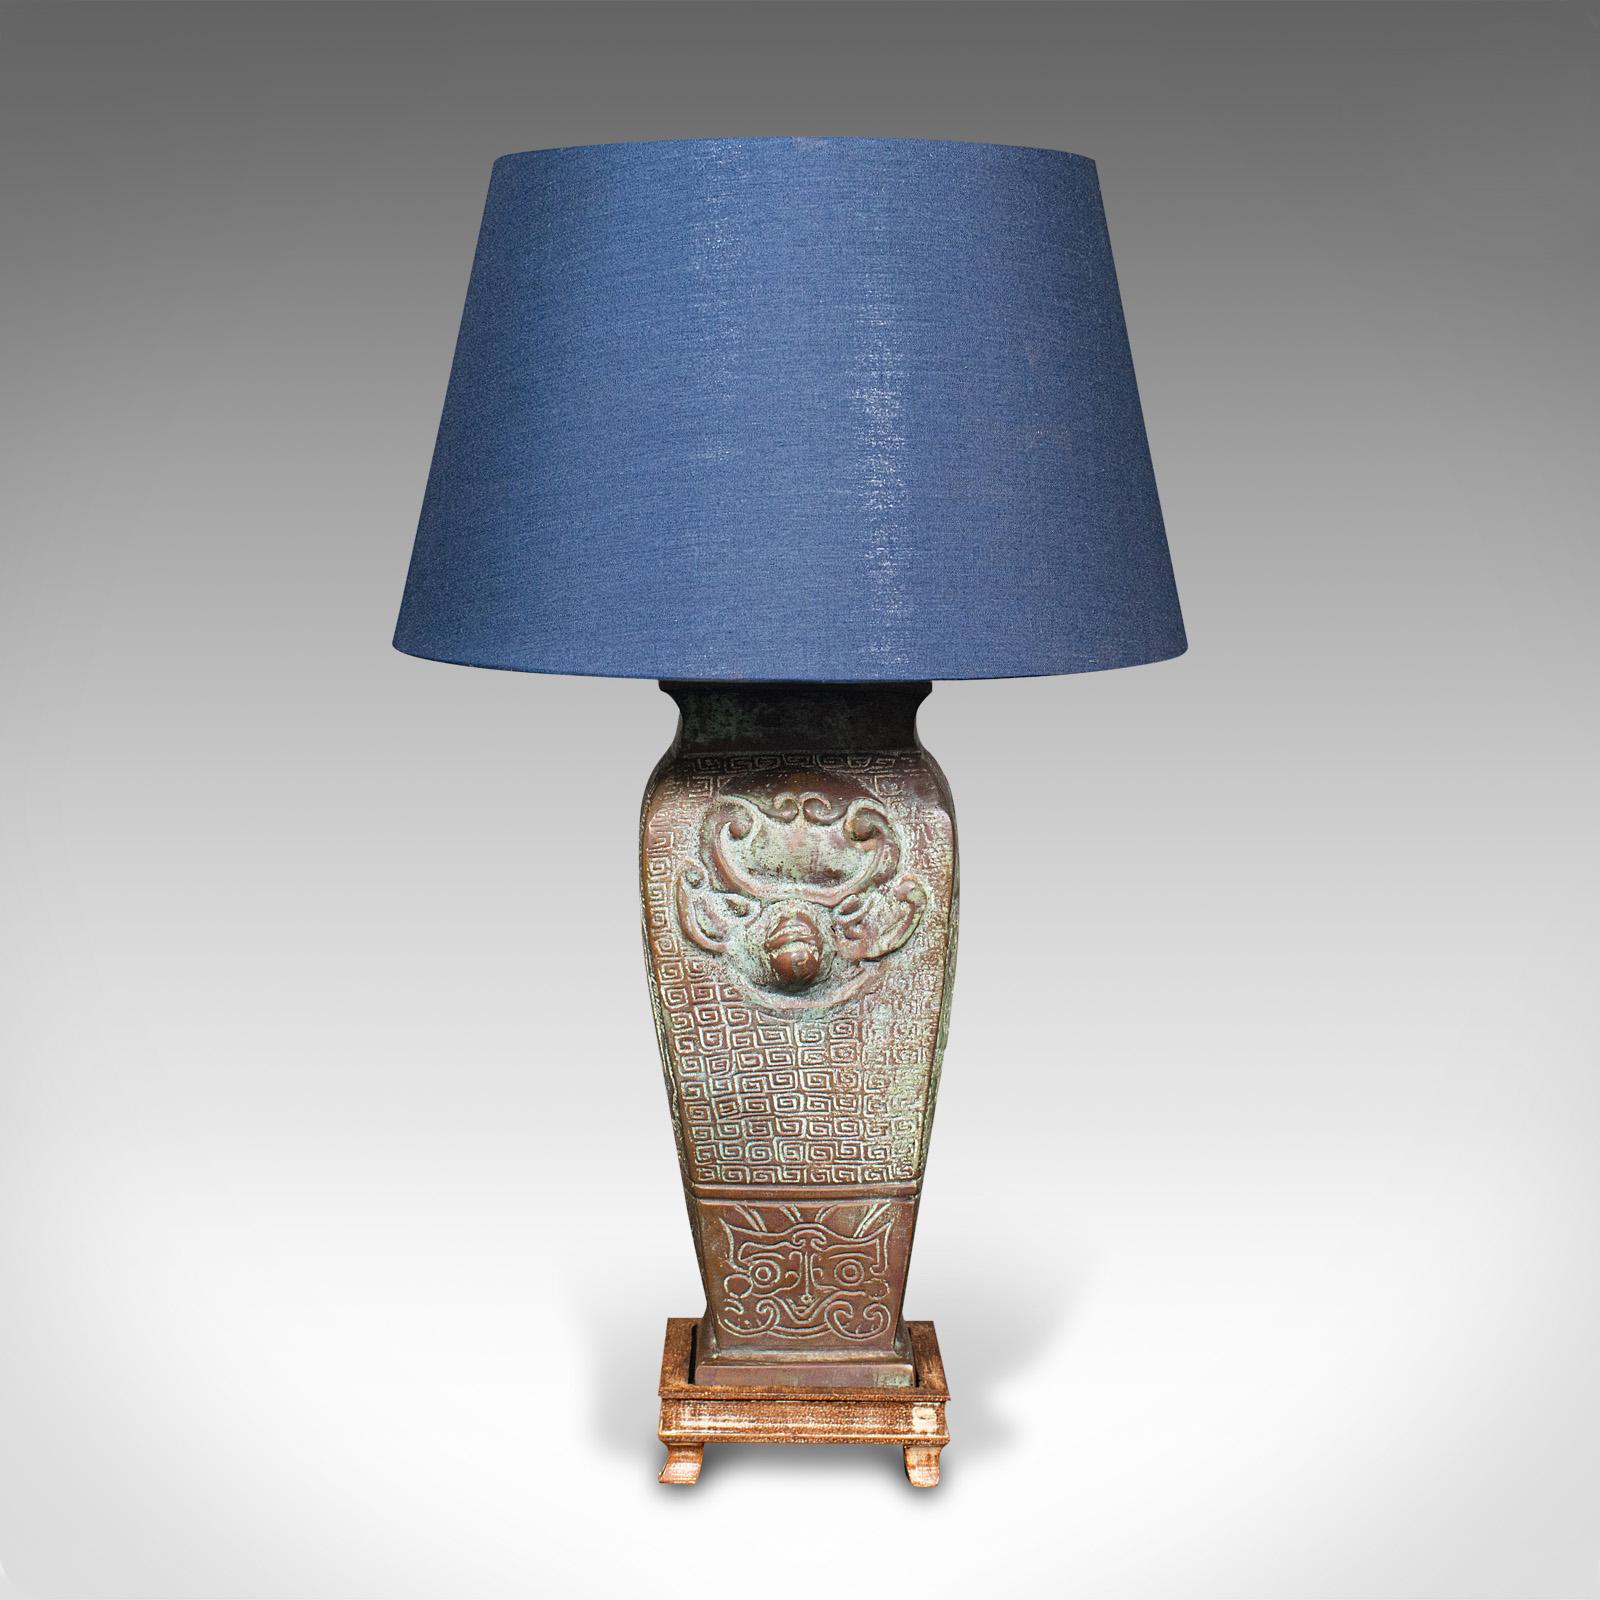 vintage bronze table lamps